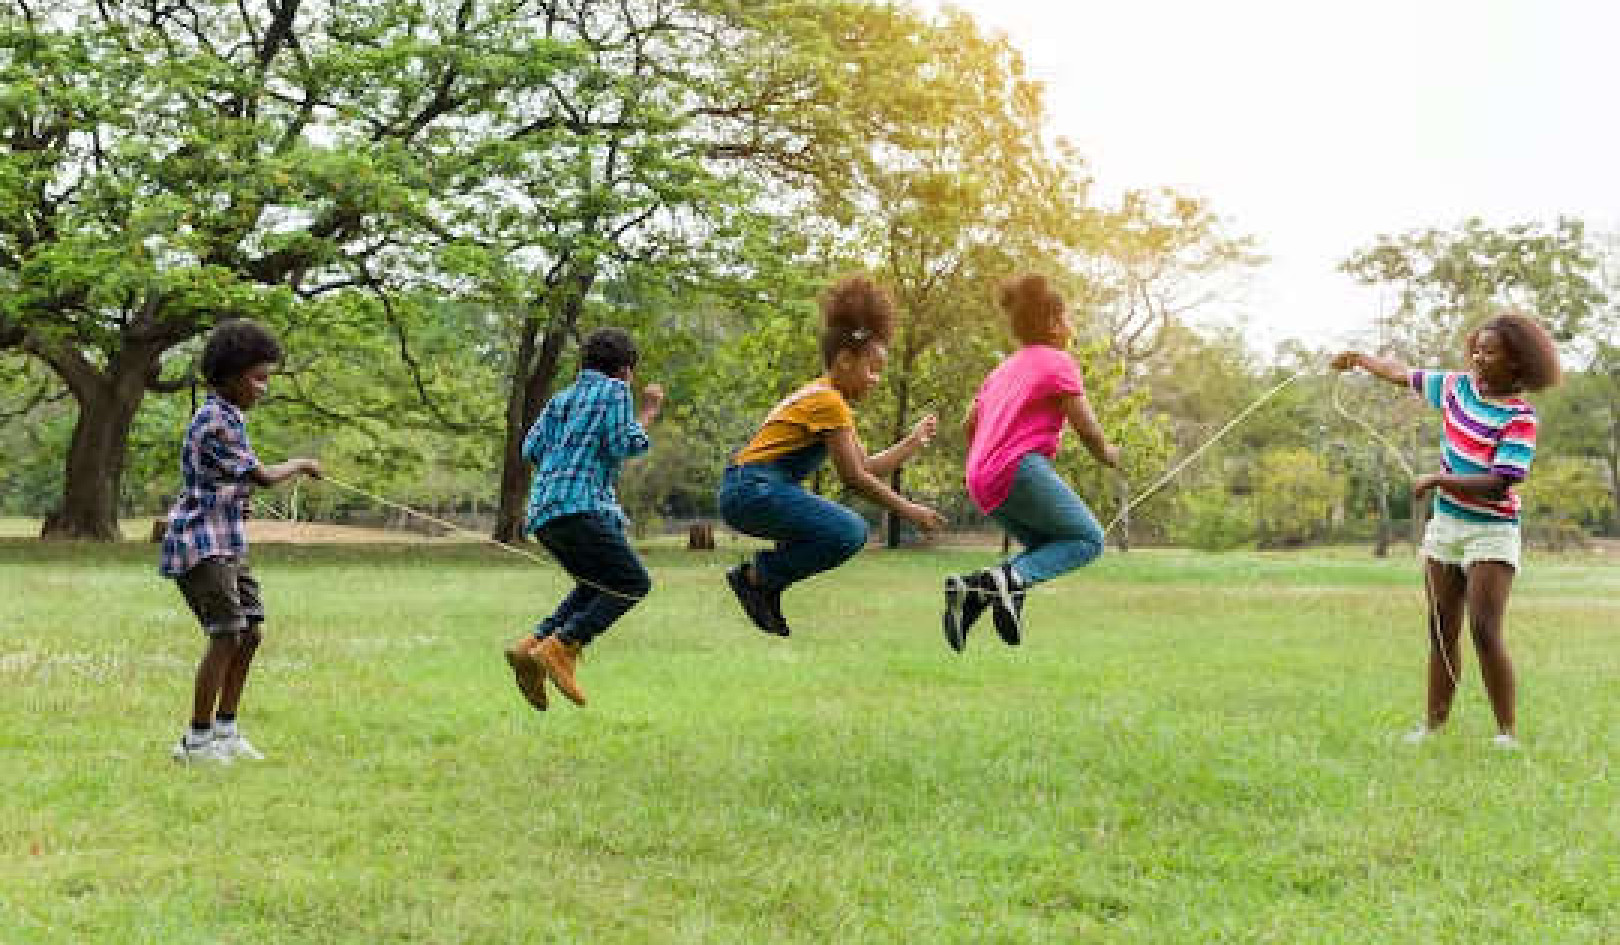 Bambini e adolescenti non fanno abbastanza attività fisica?